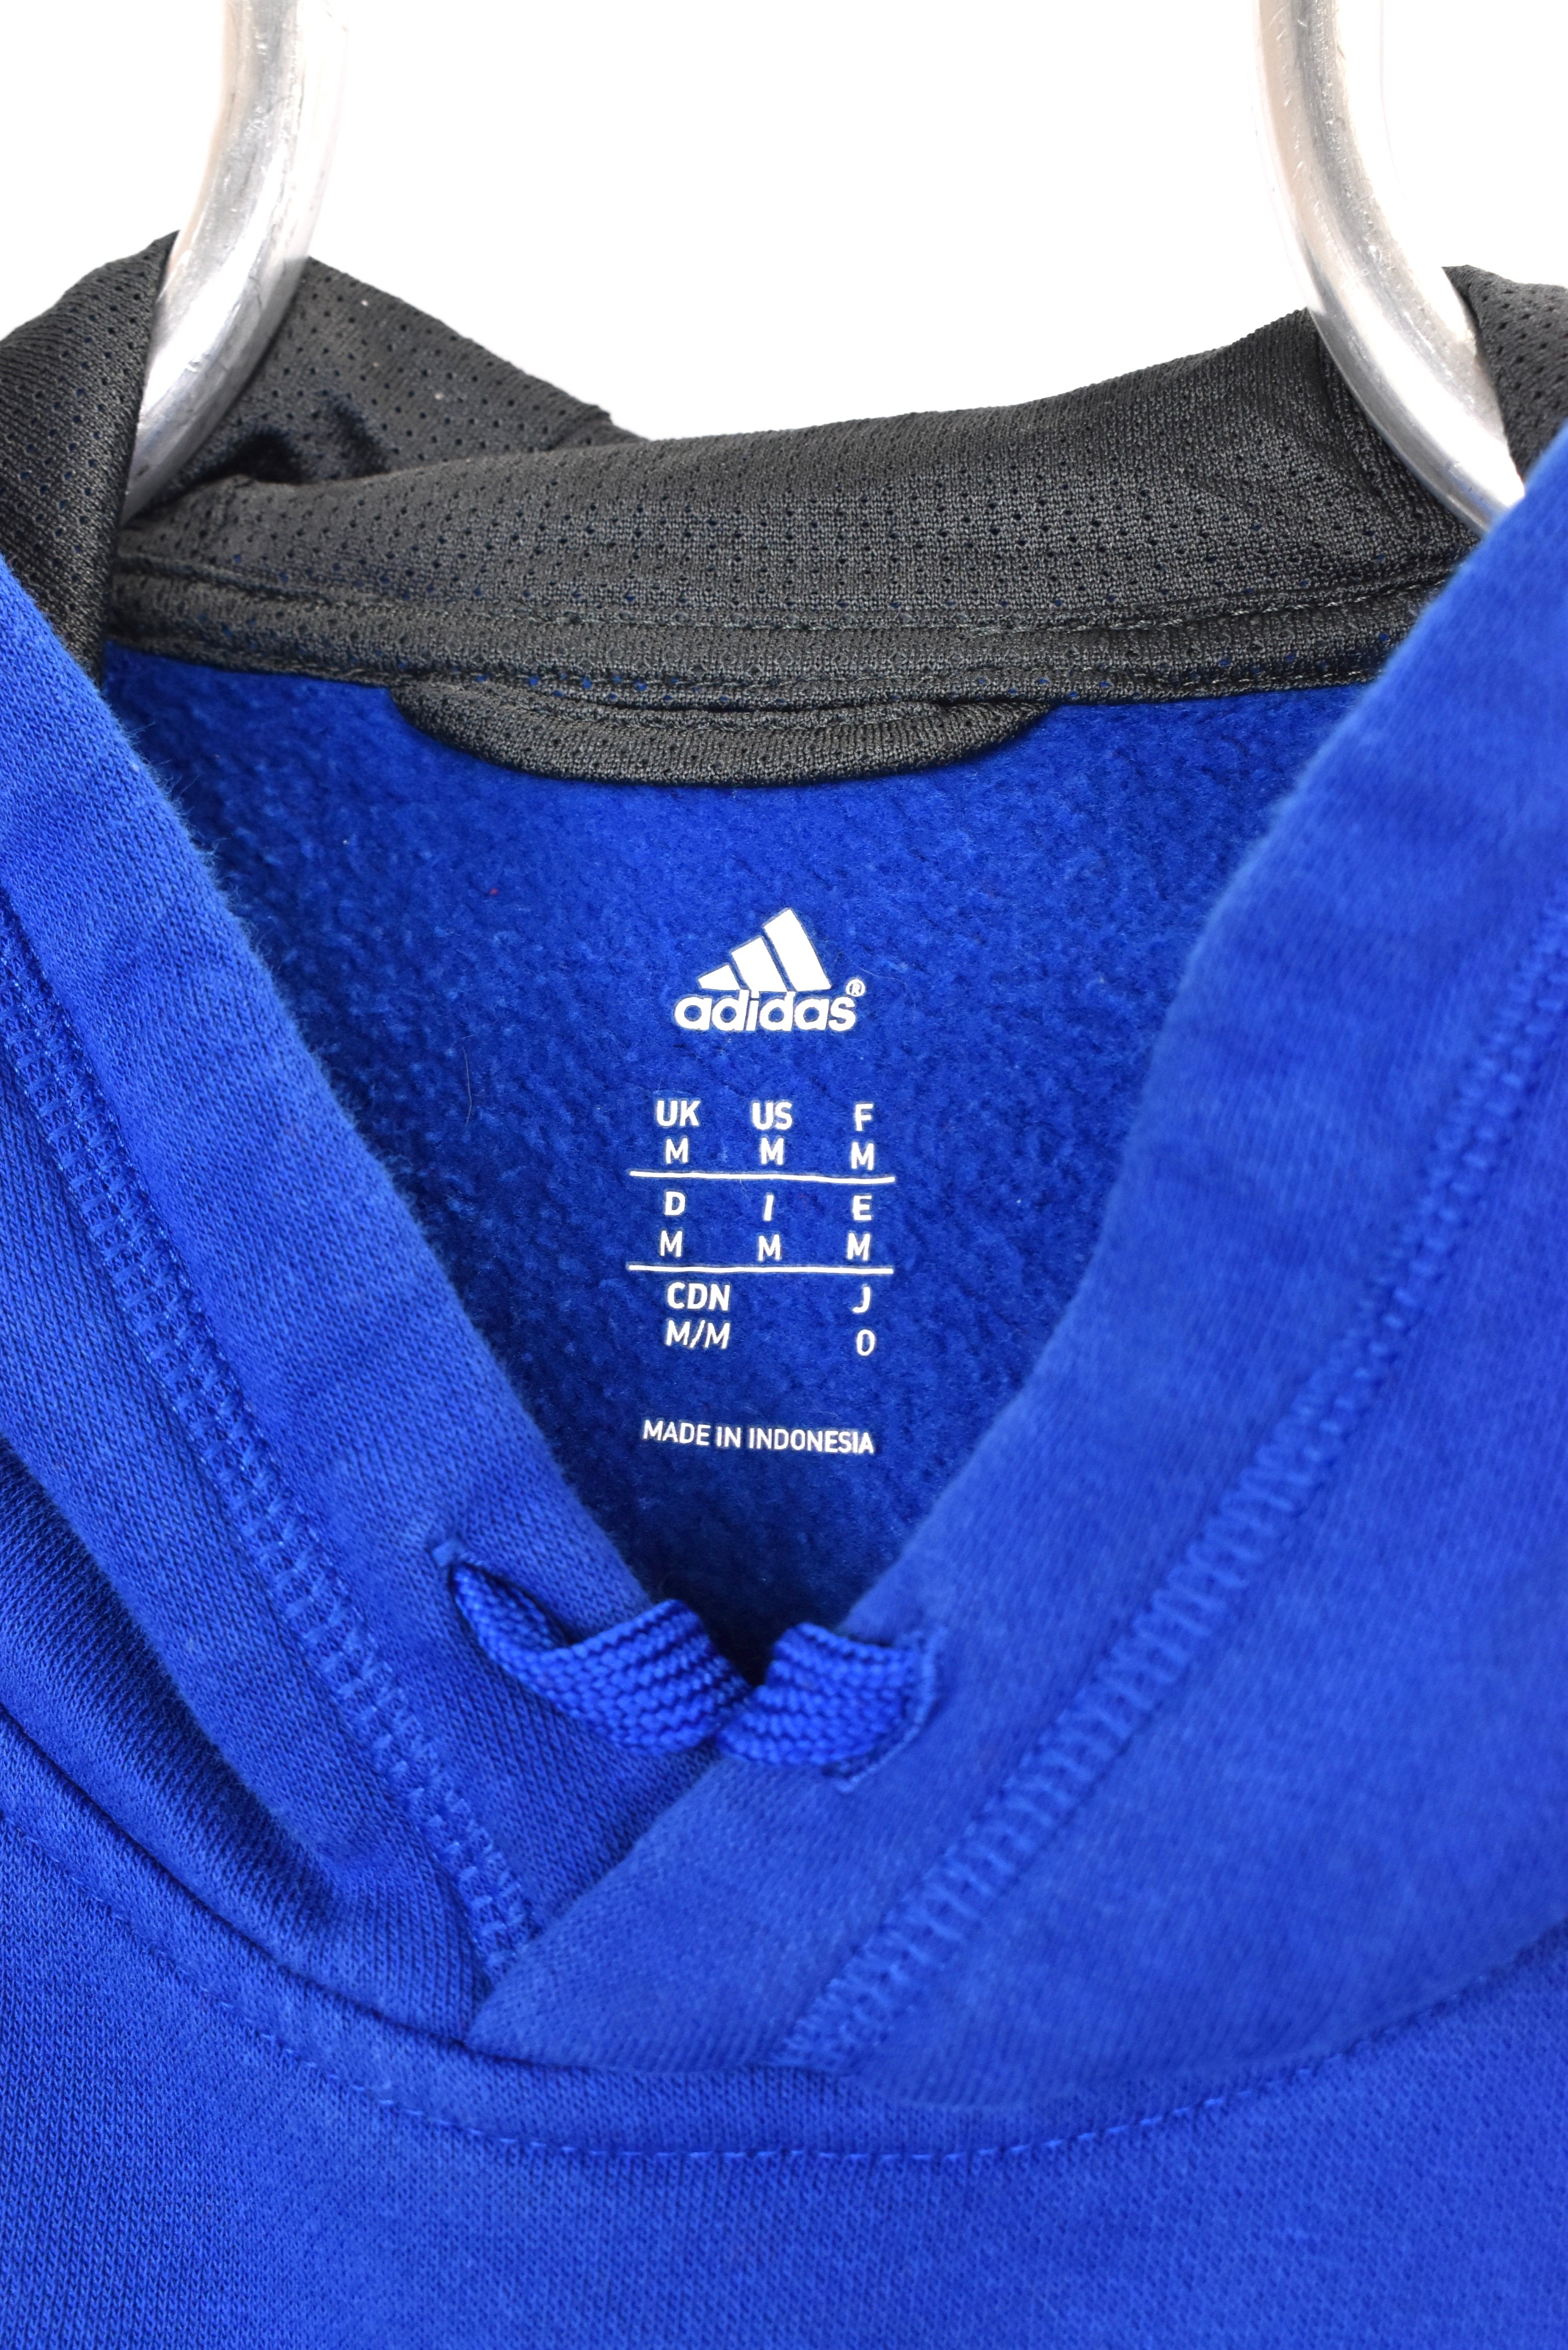 Vintage Adidas hoodie, blue embroidered sweatshirt - AU Large ADIDAS